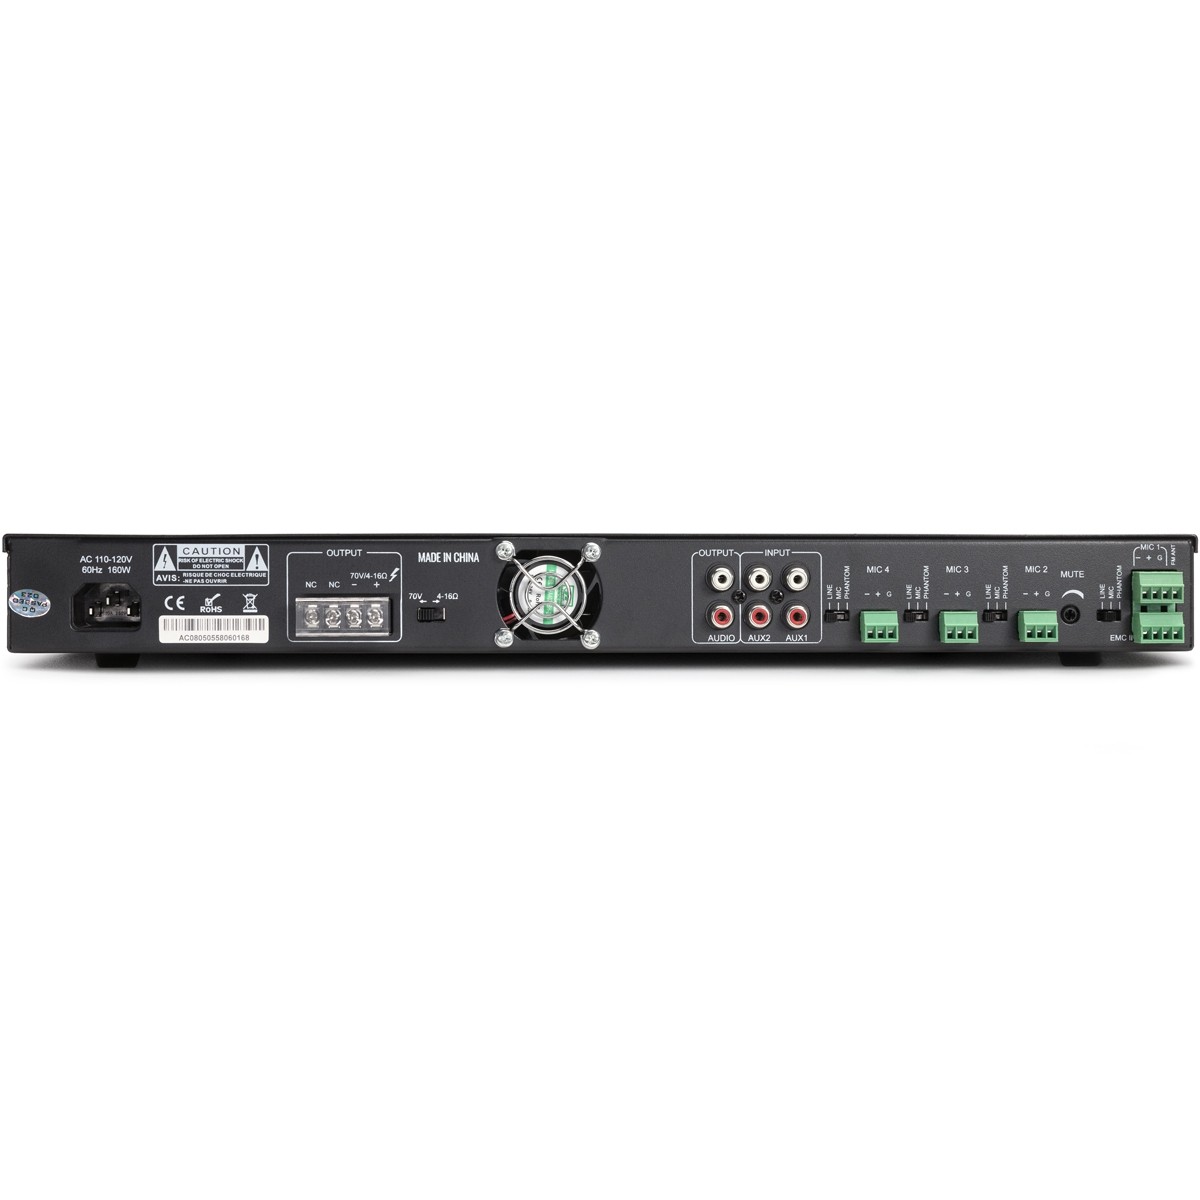 RMA120BT 120W Mixer amplifier